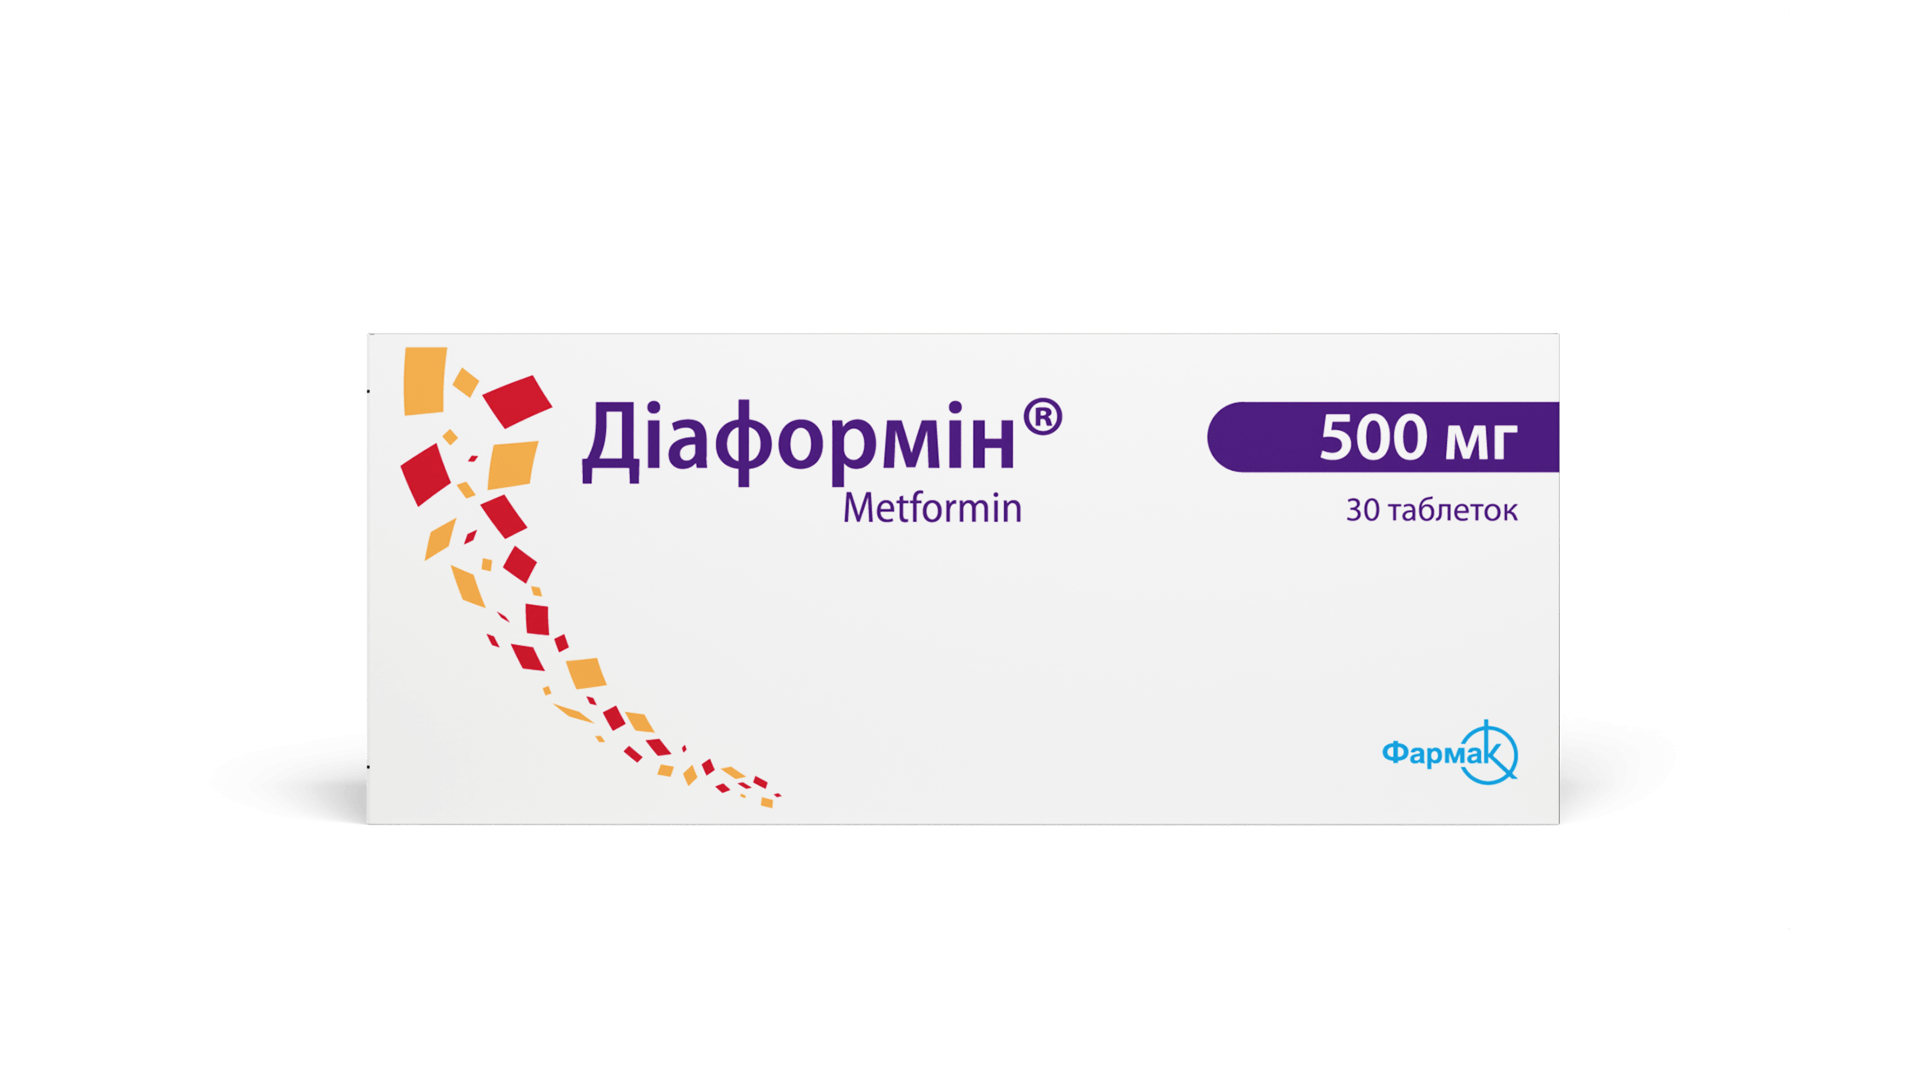 Диаформин® 500 мг (2)